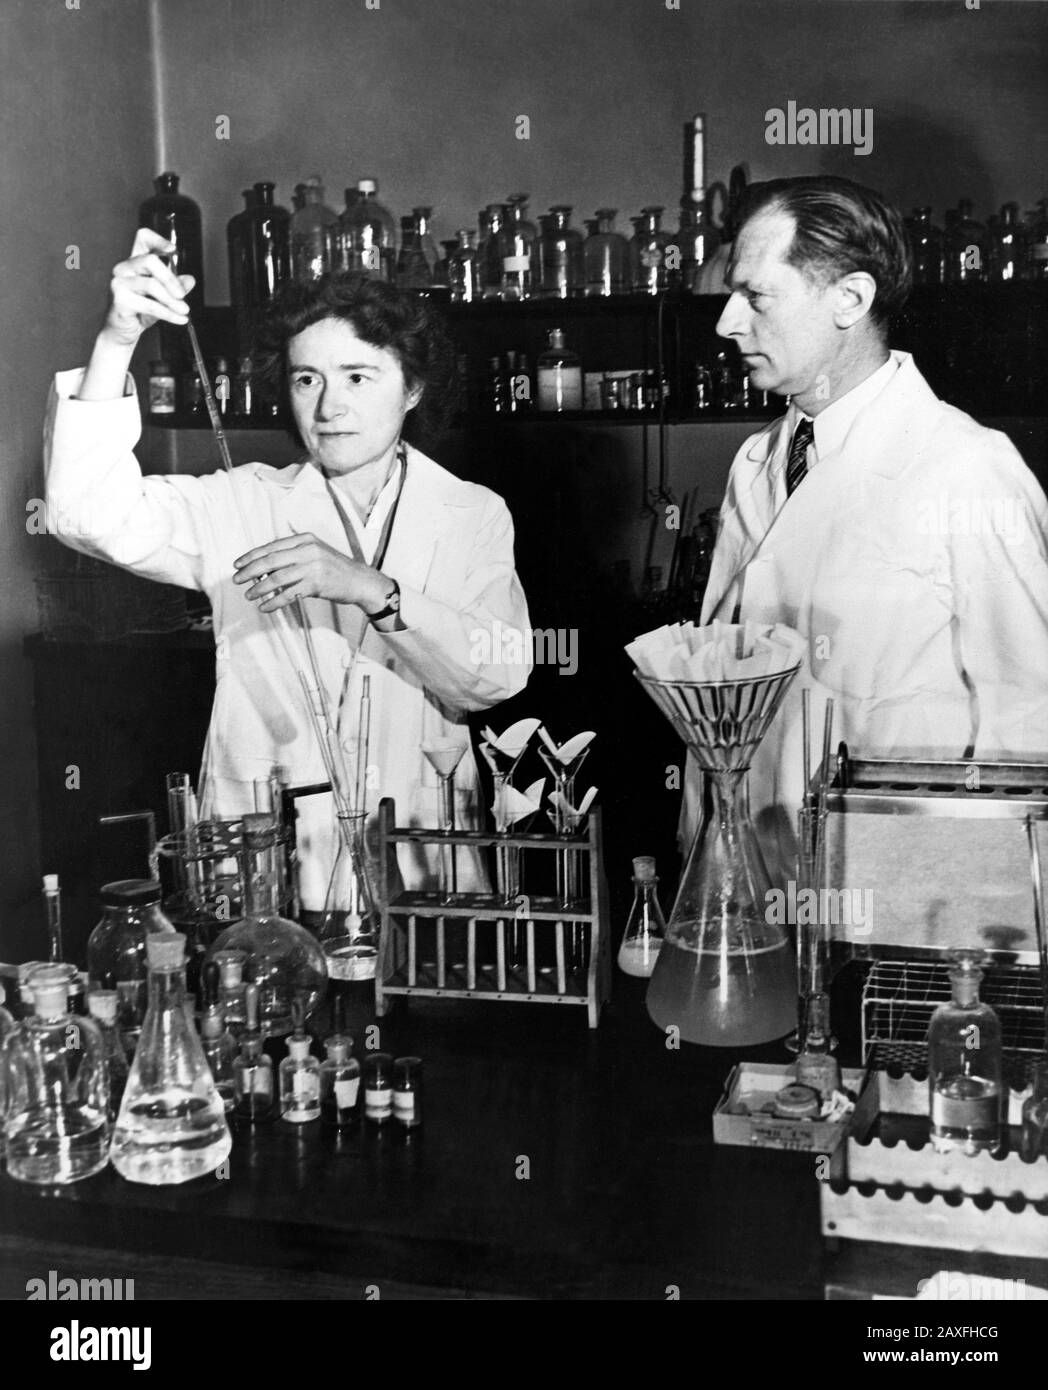 1947, USA: Die Biochemikerin Gerty Theresa Radnitz Cori (* um 1896; † 1957) und ihr Ehemann Carl Ferdinand Cori (* um 6-1984) wurden 1947 gemeinsam mit dem Nobelpreis für Medizin für ihre Arbeit zur Metabolisierung des menschlichen Körpers von Zucker ausgezeichnet. - GESCHICHTE - Foto storiche - Foto storica - scienziato - Wissenschaftler - Porträt - Ritratto - MEDICICINA - Medizin - SCIENZA - WISSENSCHAFT - CHIMICA - CHEMIE - Krawatte - Krawatte - Kragen - Colletto - Profilo - Profil - marito e moglie © Archivio GBB / Stockfoto